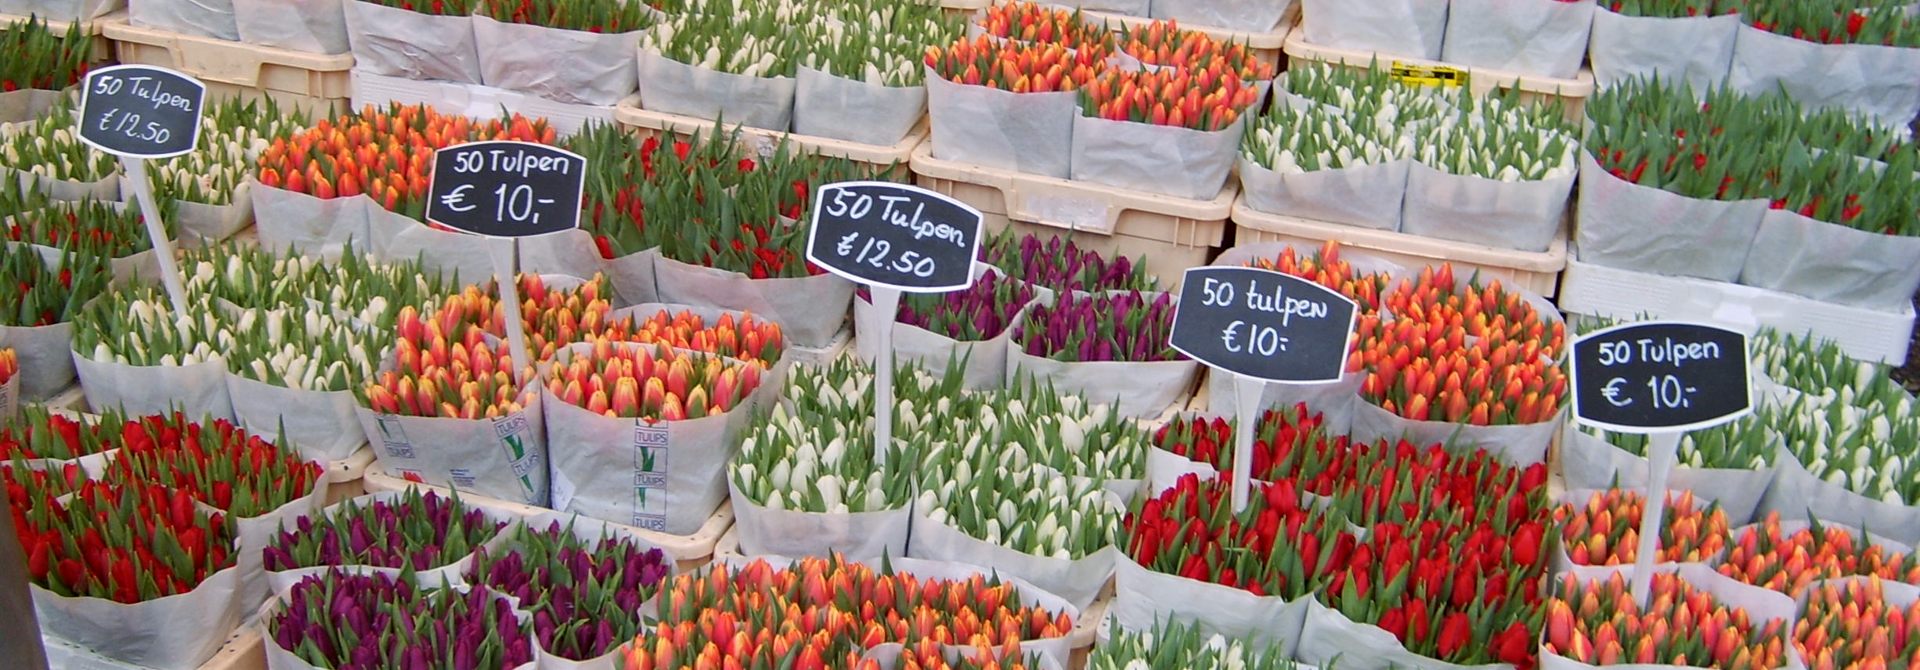 Amsterdam Flower Market Header